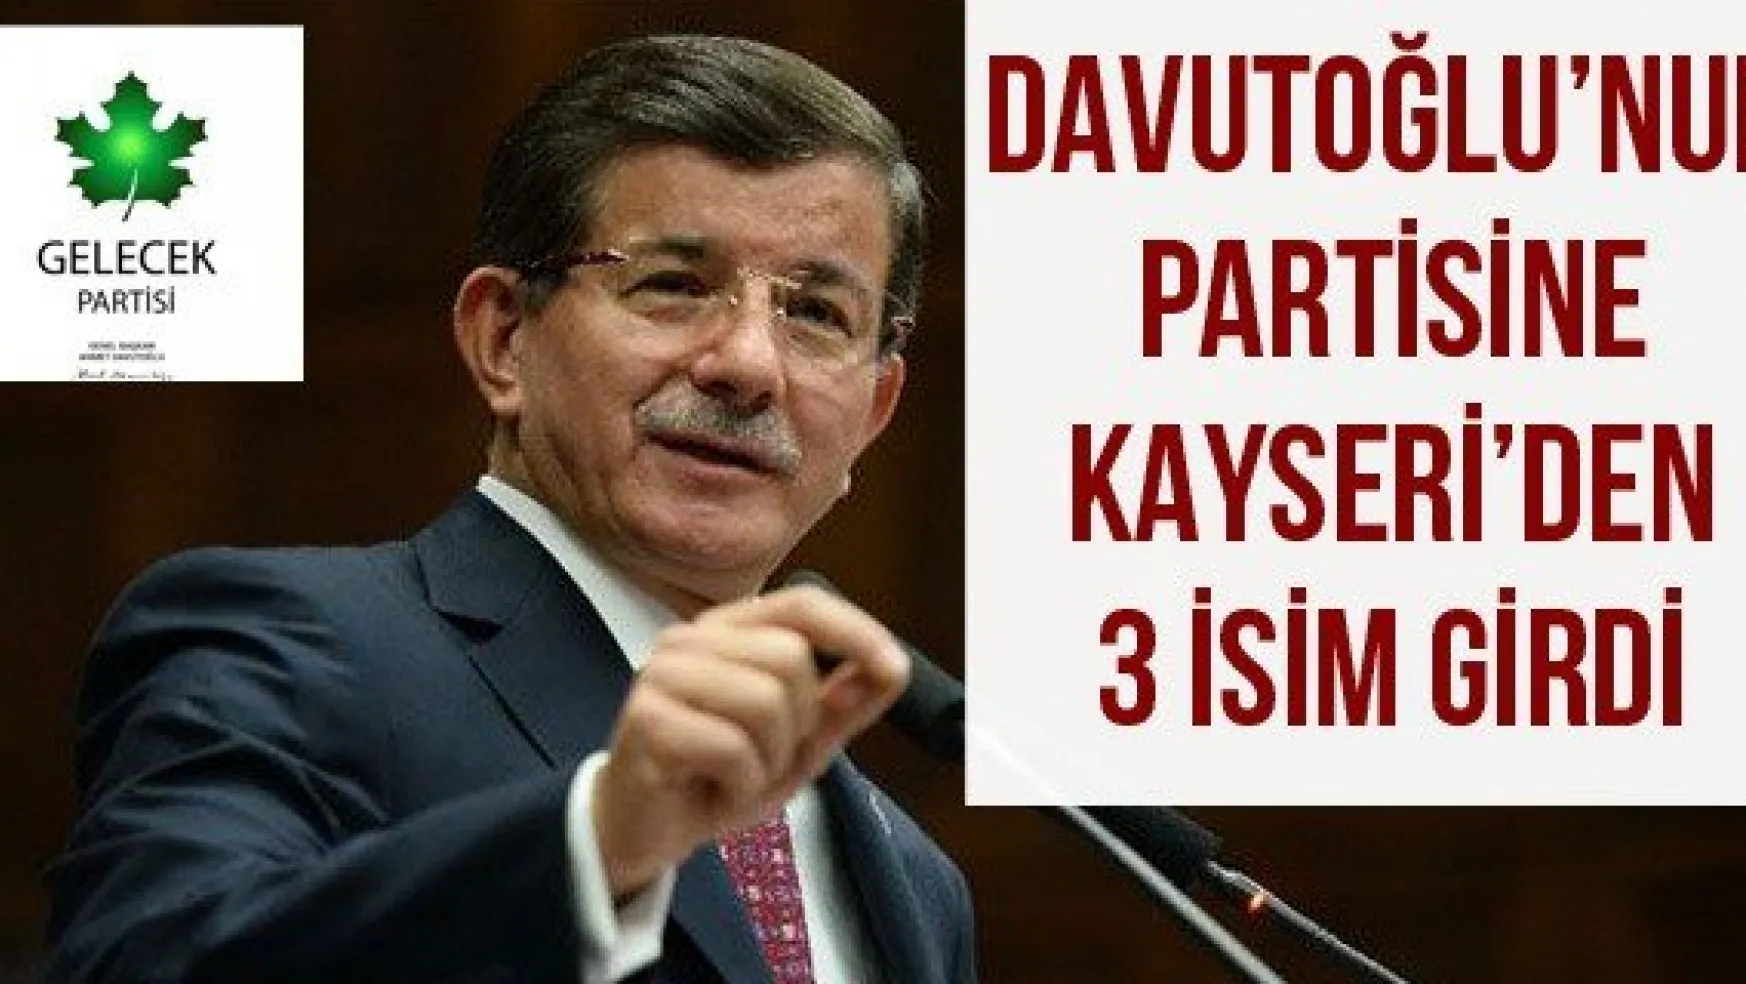 DAVUTOĞLU'NUN PARTİSİNE KAYSERİ'DEN 3 İSİM GİRDİ